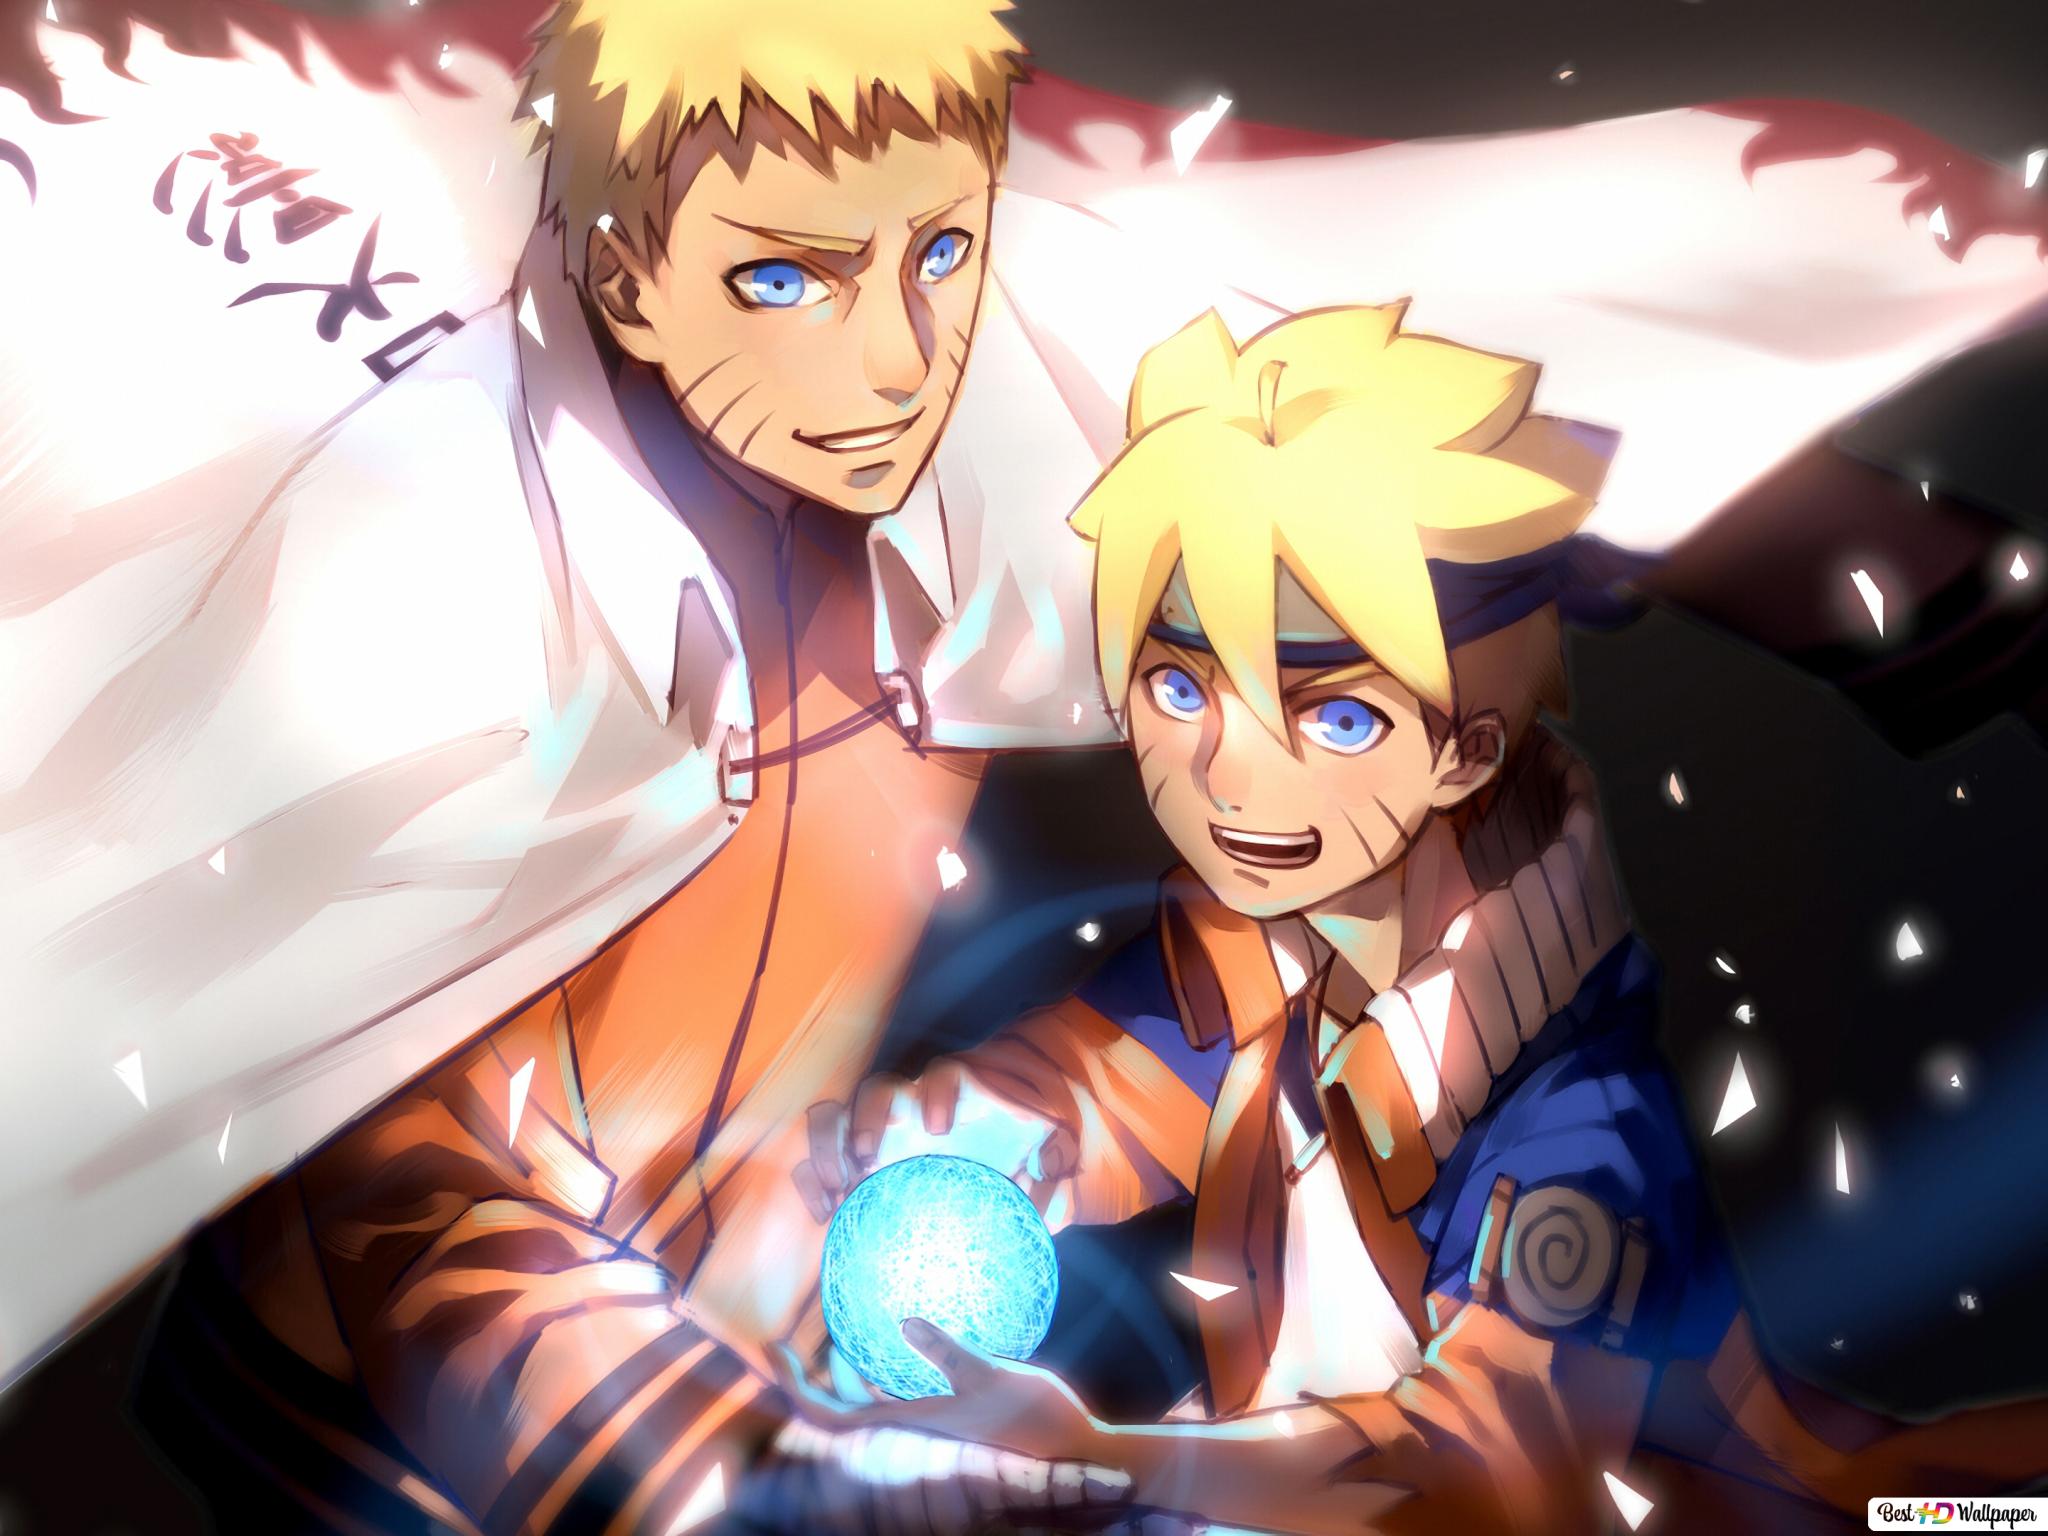 Boruto and Naruto